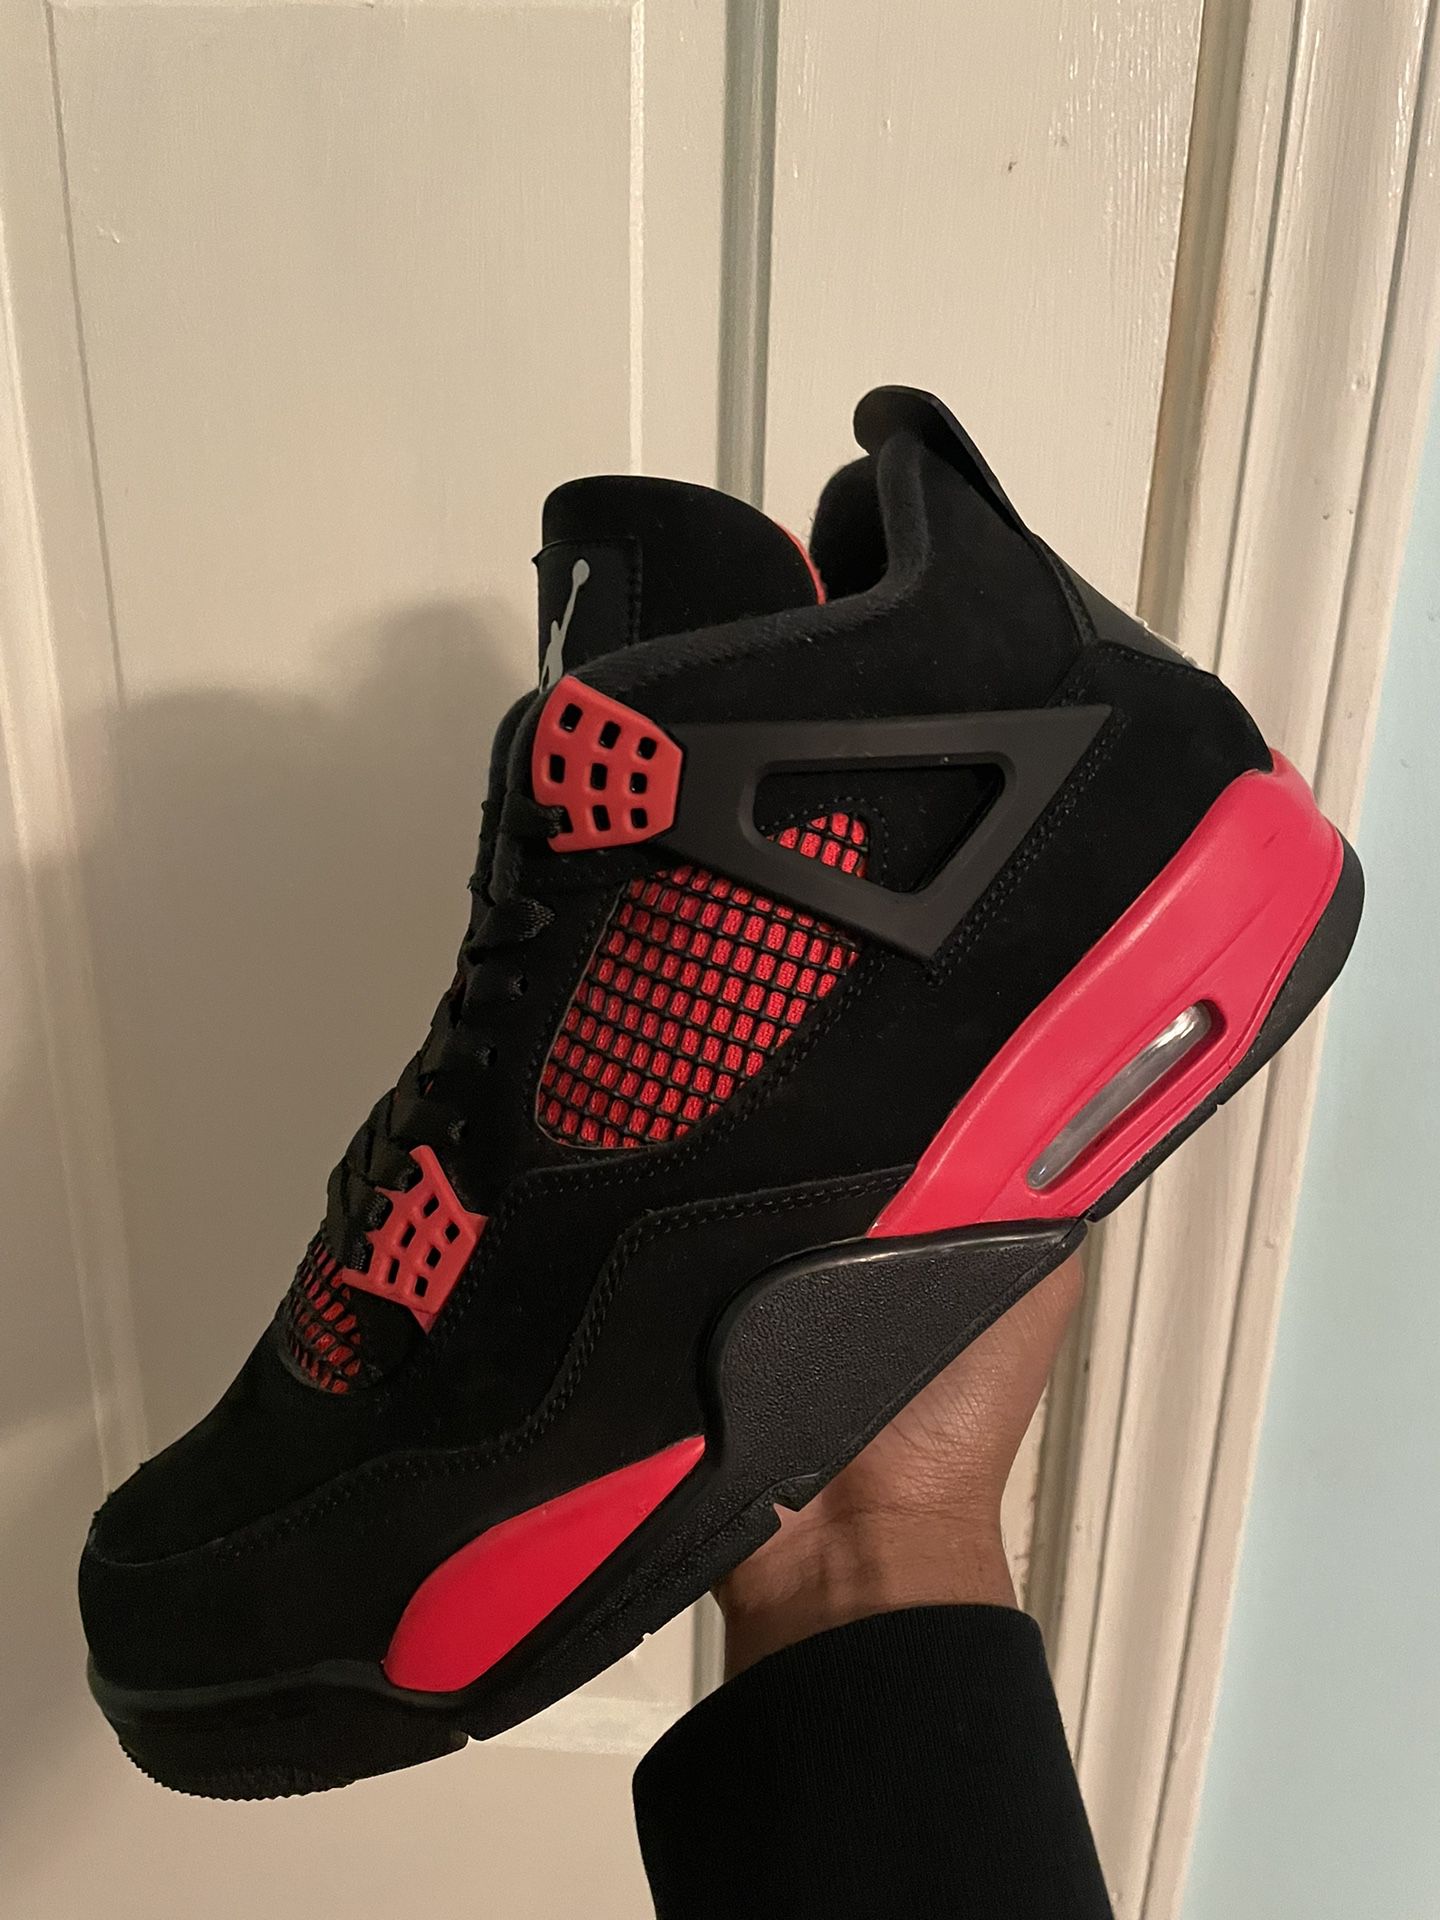 Jordan 4 Red Thunder Size 10.5 Worn 3 Times